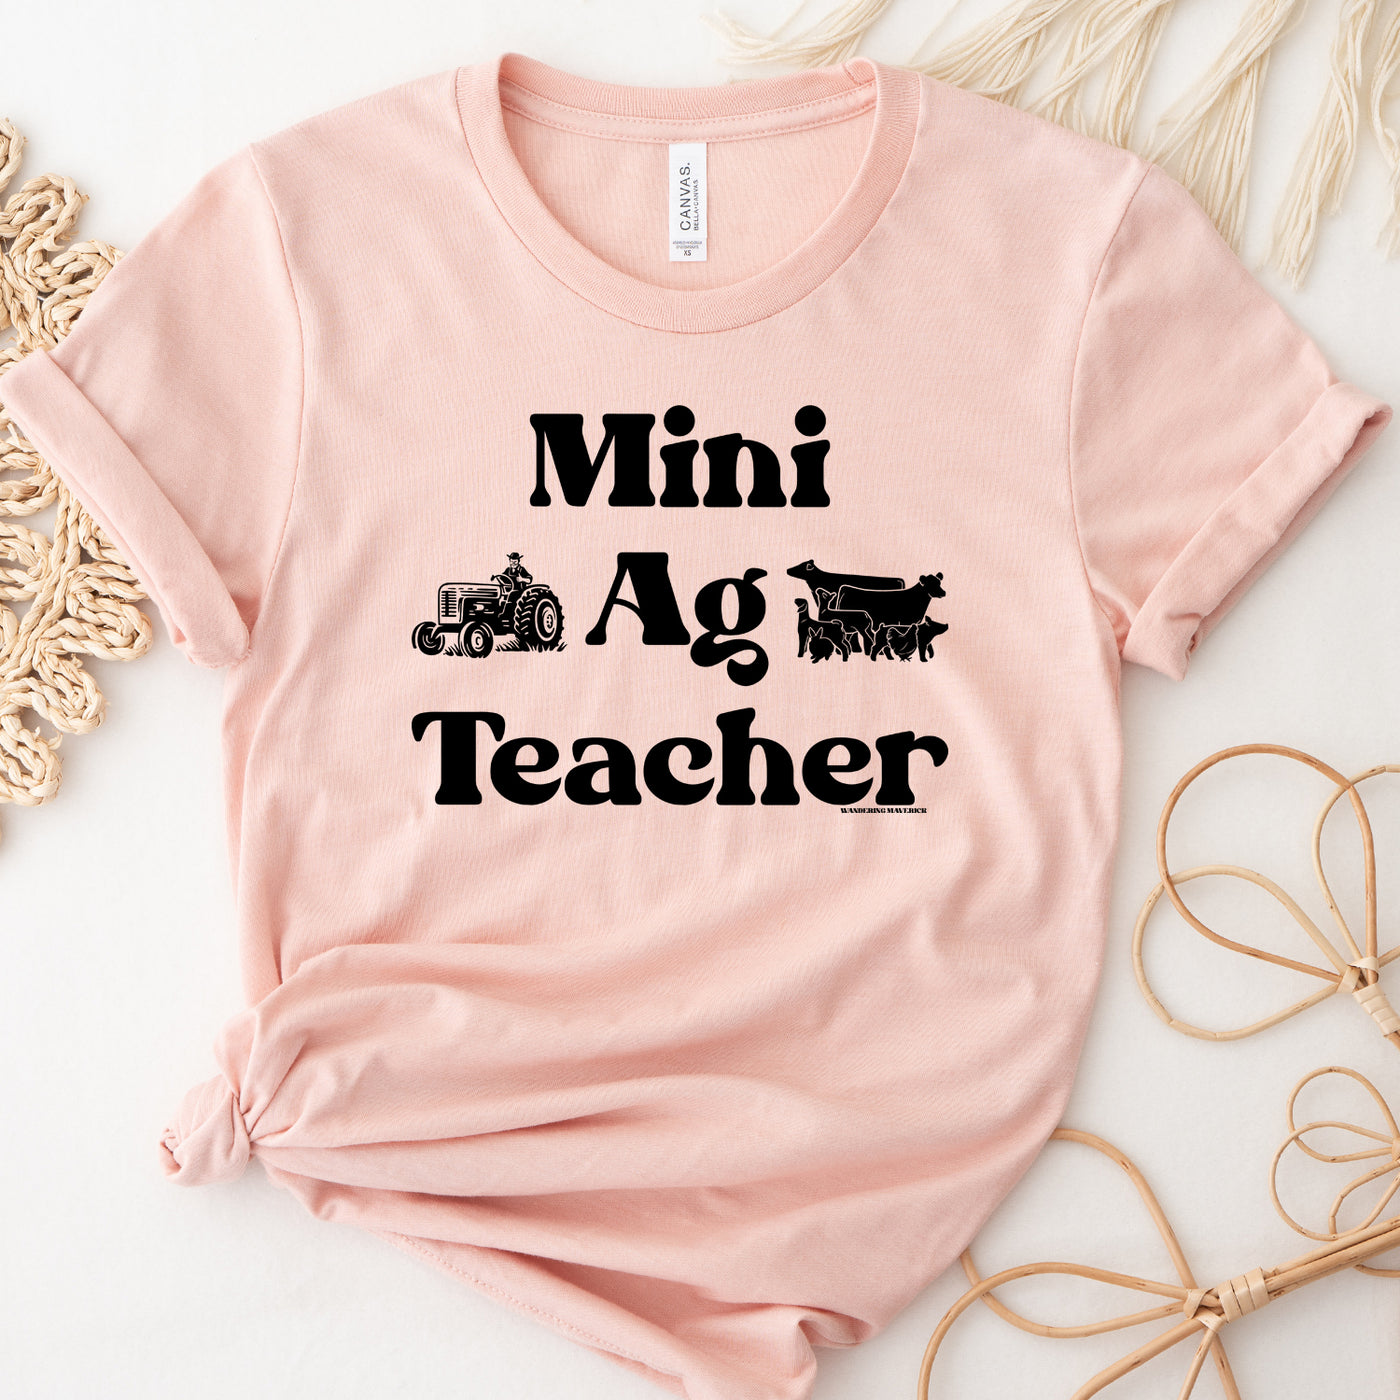 Mini Ag Teacher T-Shirt (XS-4XL) - Multiple Colors!